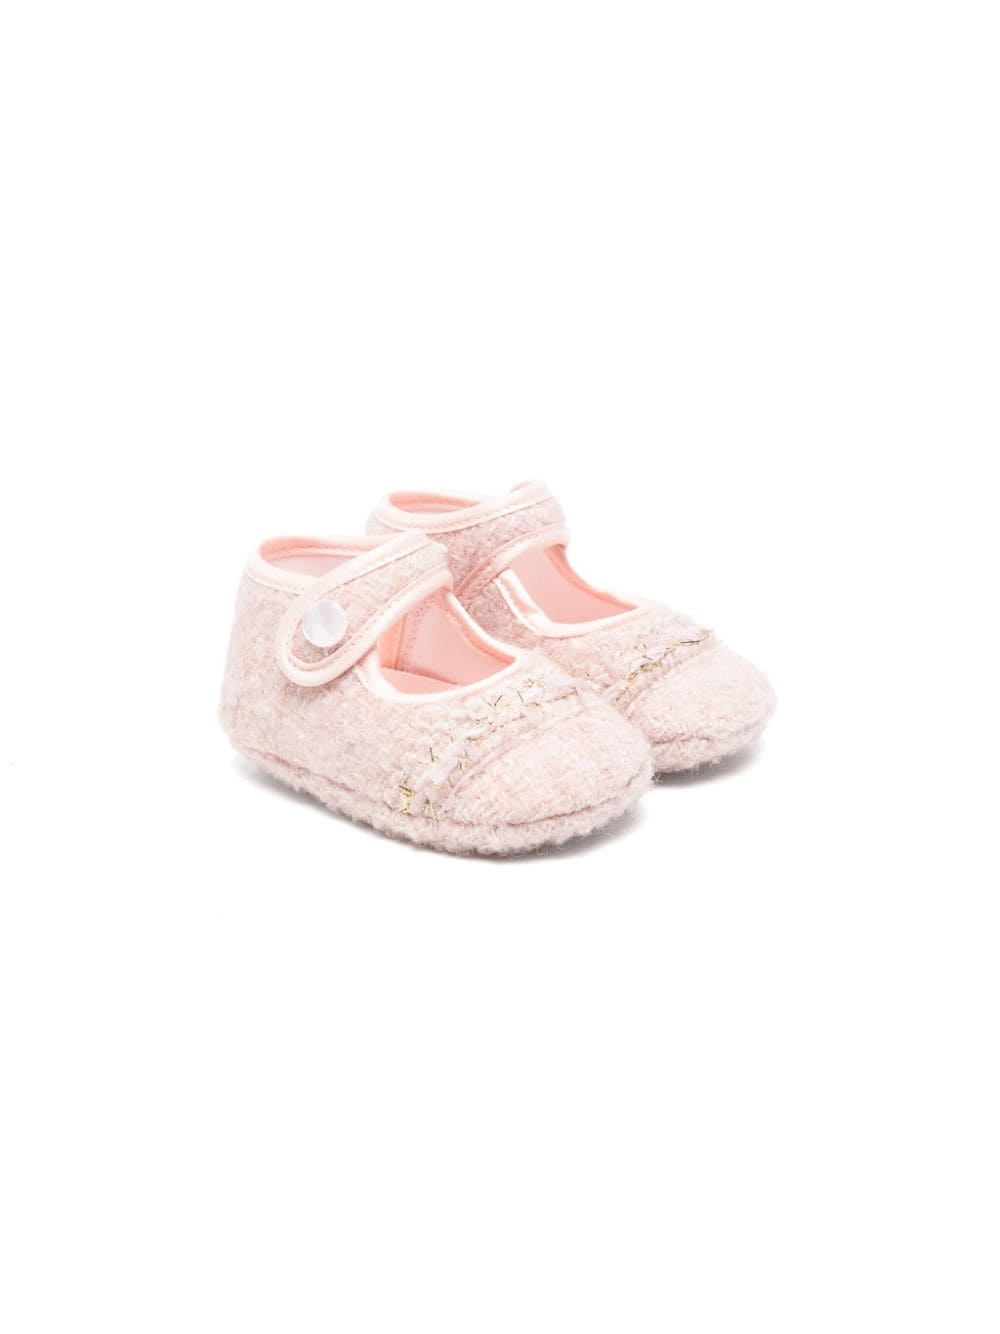 Monnalisa Babies' Metallic-thread Tweed Crib Shoes In Pink